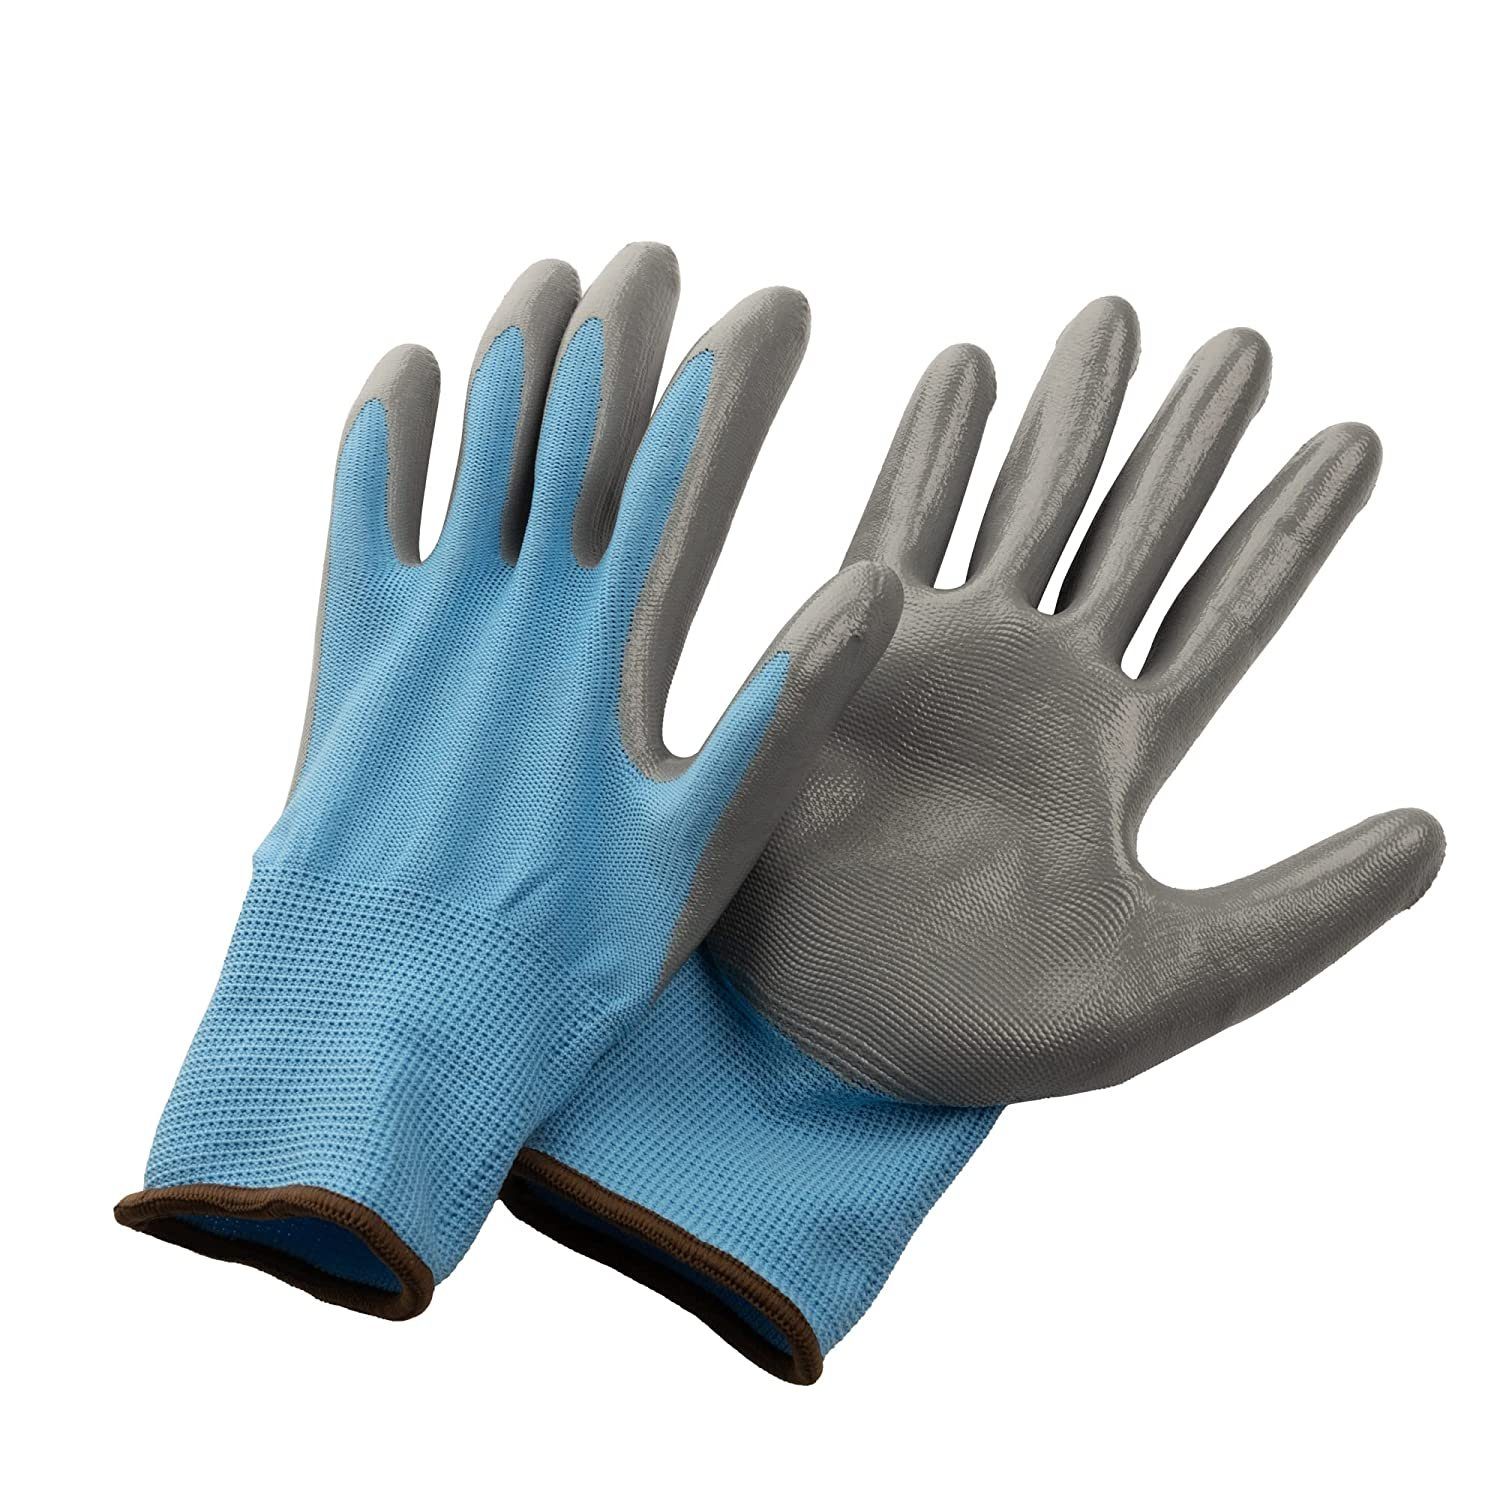 Gartenhandschuhe Schutzhandschuhe 6 Gartenhandschuhe (Set, Größe Handschuhe Blau) Damen/Herren, Montagehandschuhe 10, Arbeitshandschuhe Arbeitshandschuhe Centi